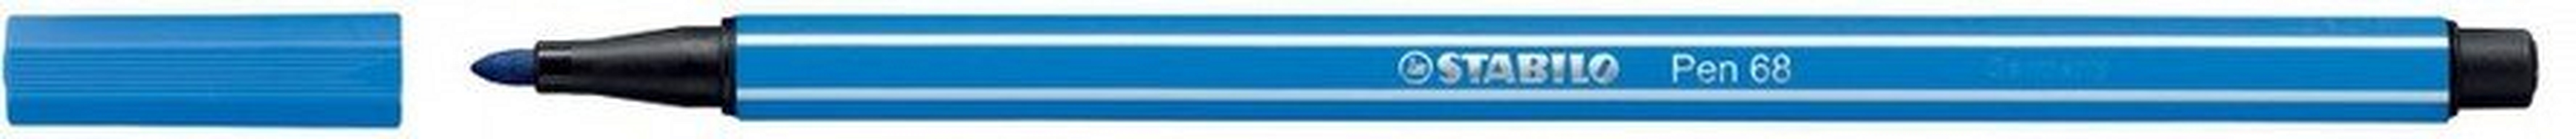 Фломастер Stabilo Pen 68, синий - фото 1